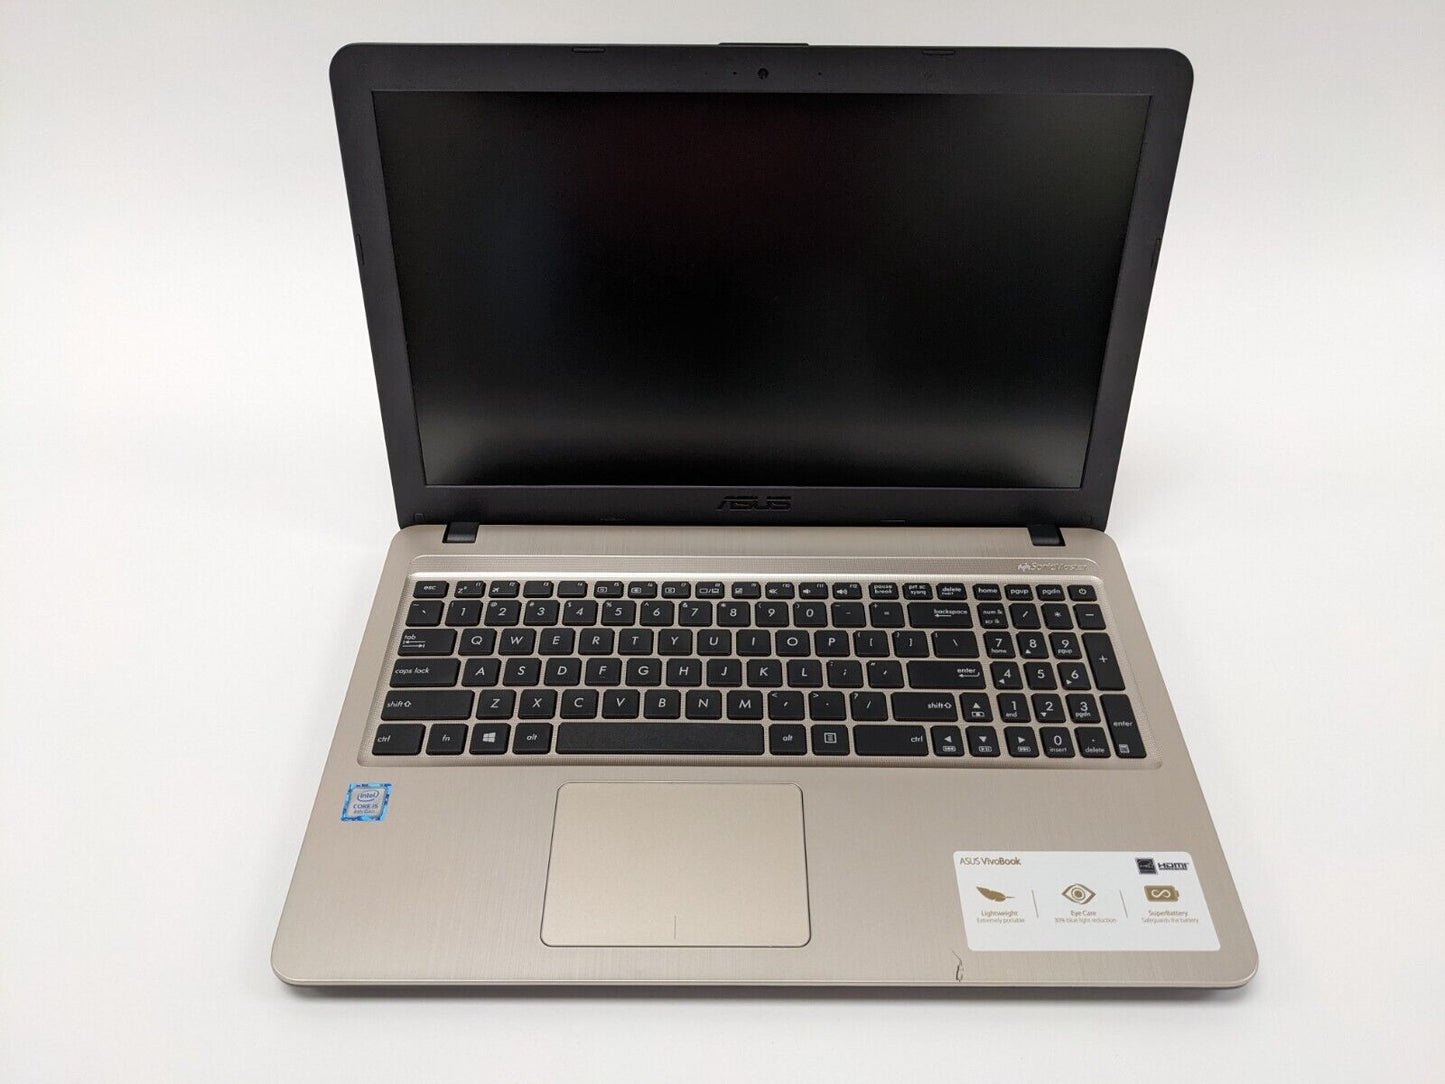 Asus VivoBook 15 X540UA-DB51